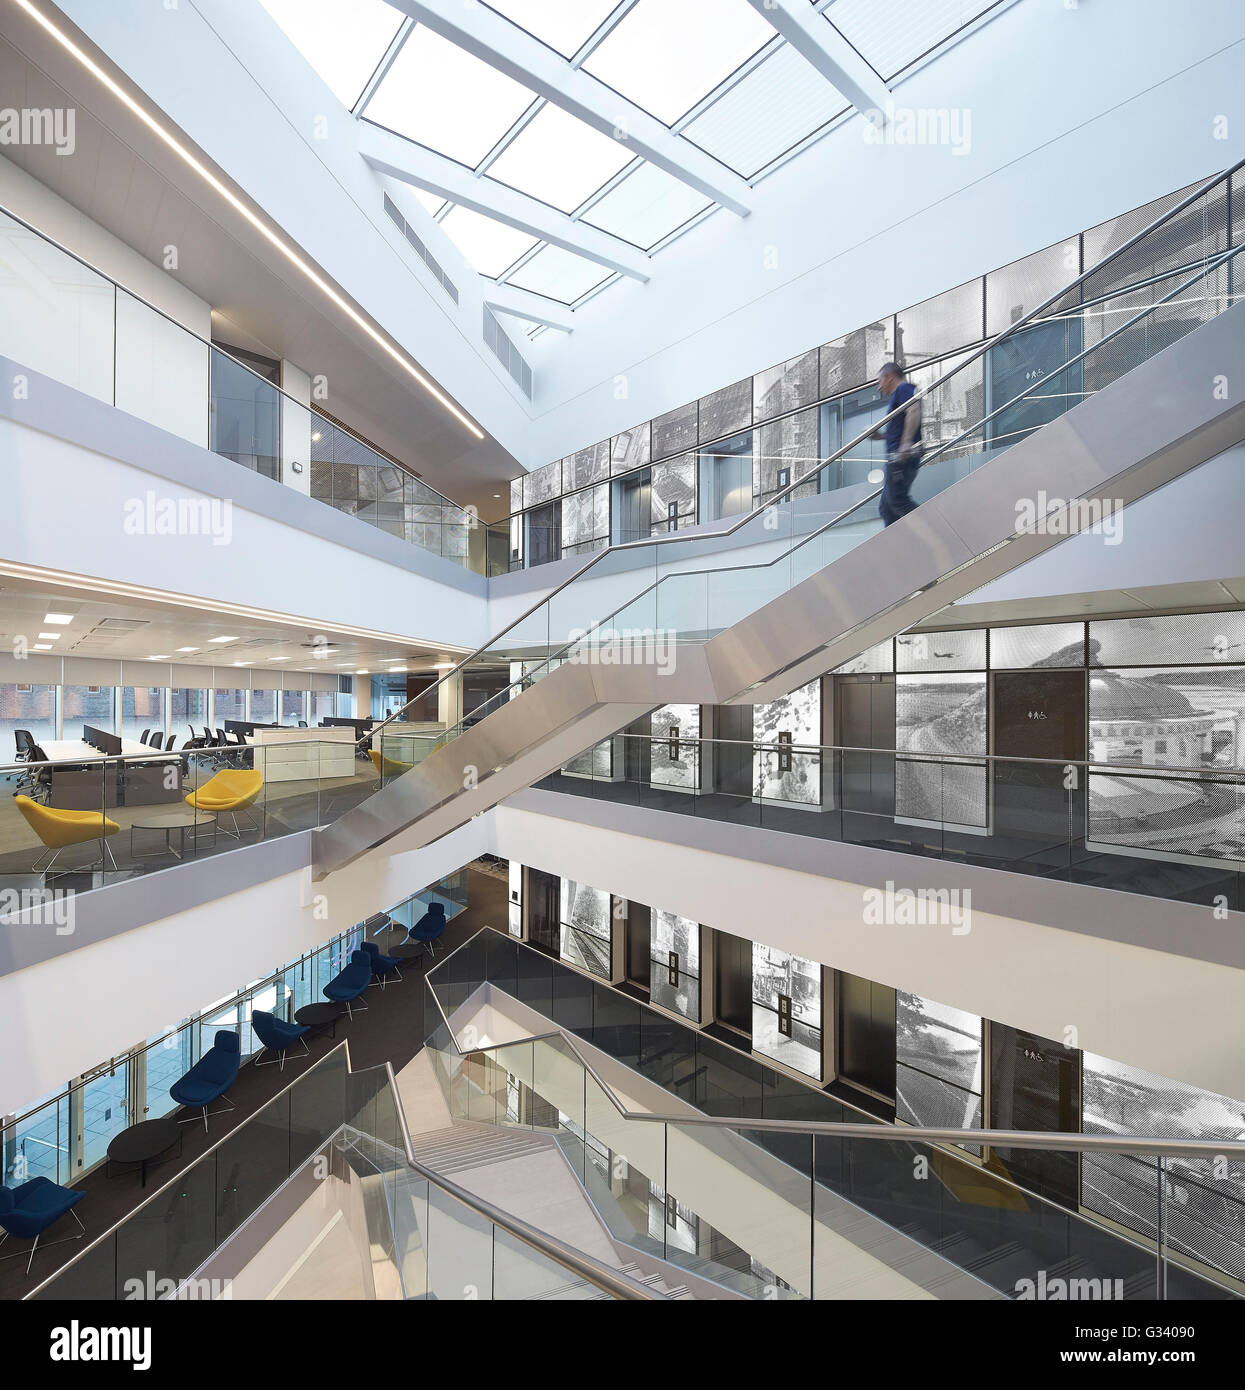 Kreuzung Treppen mit voller Höhe Atrium. KPMG-Büros, Leeds, Leeds, Vereinigtes Königreich. Architekt: Sheppard Robson, 2015. Stockfoto